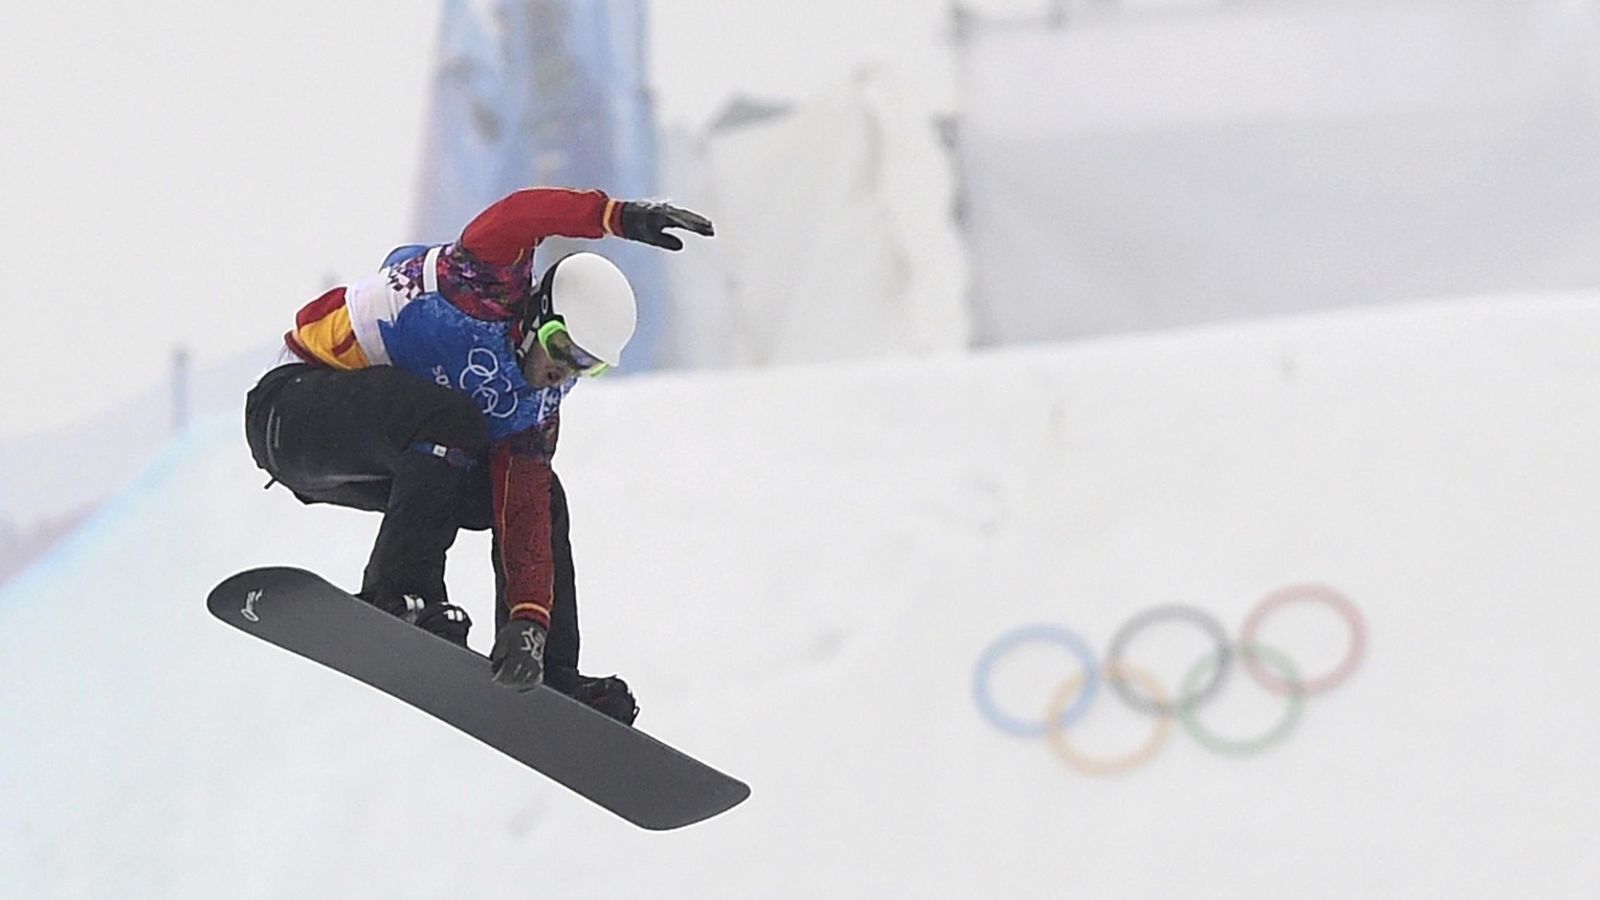 Foto: Lucas Eguibar durante los Juegos Olímpicos de Sochi 2014 (Dylan Martinez/Reuters)